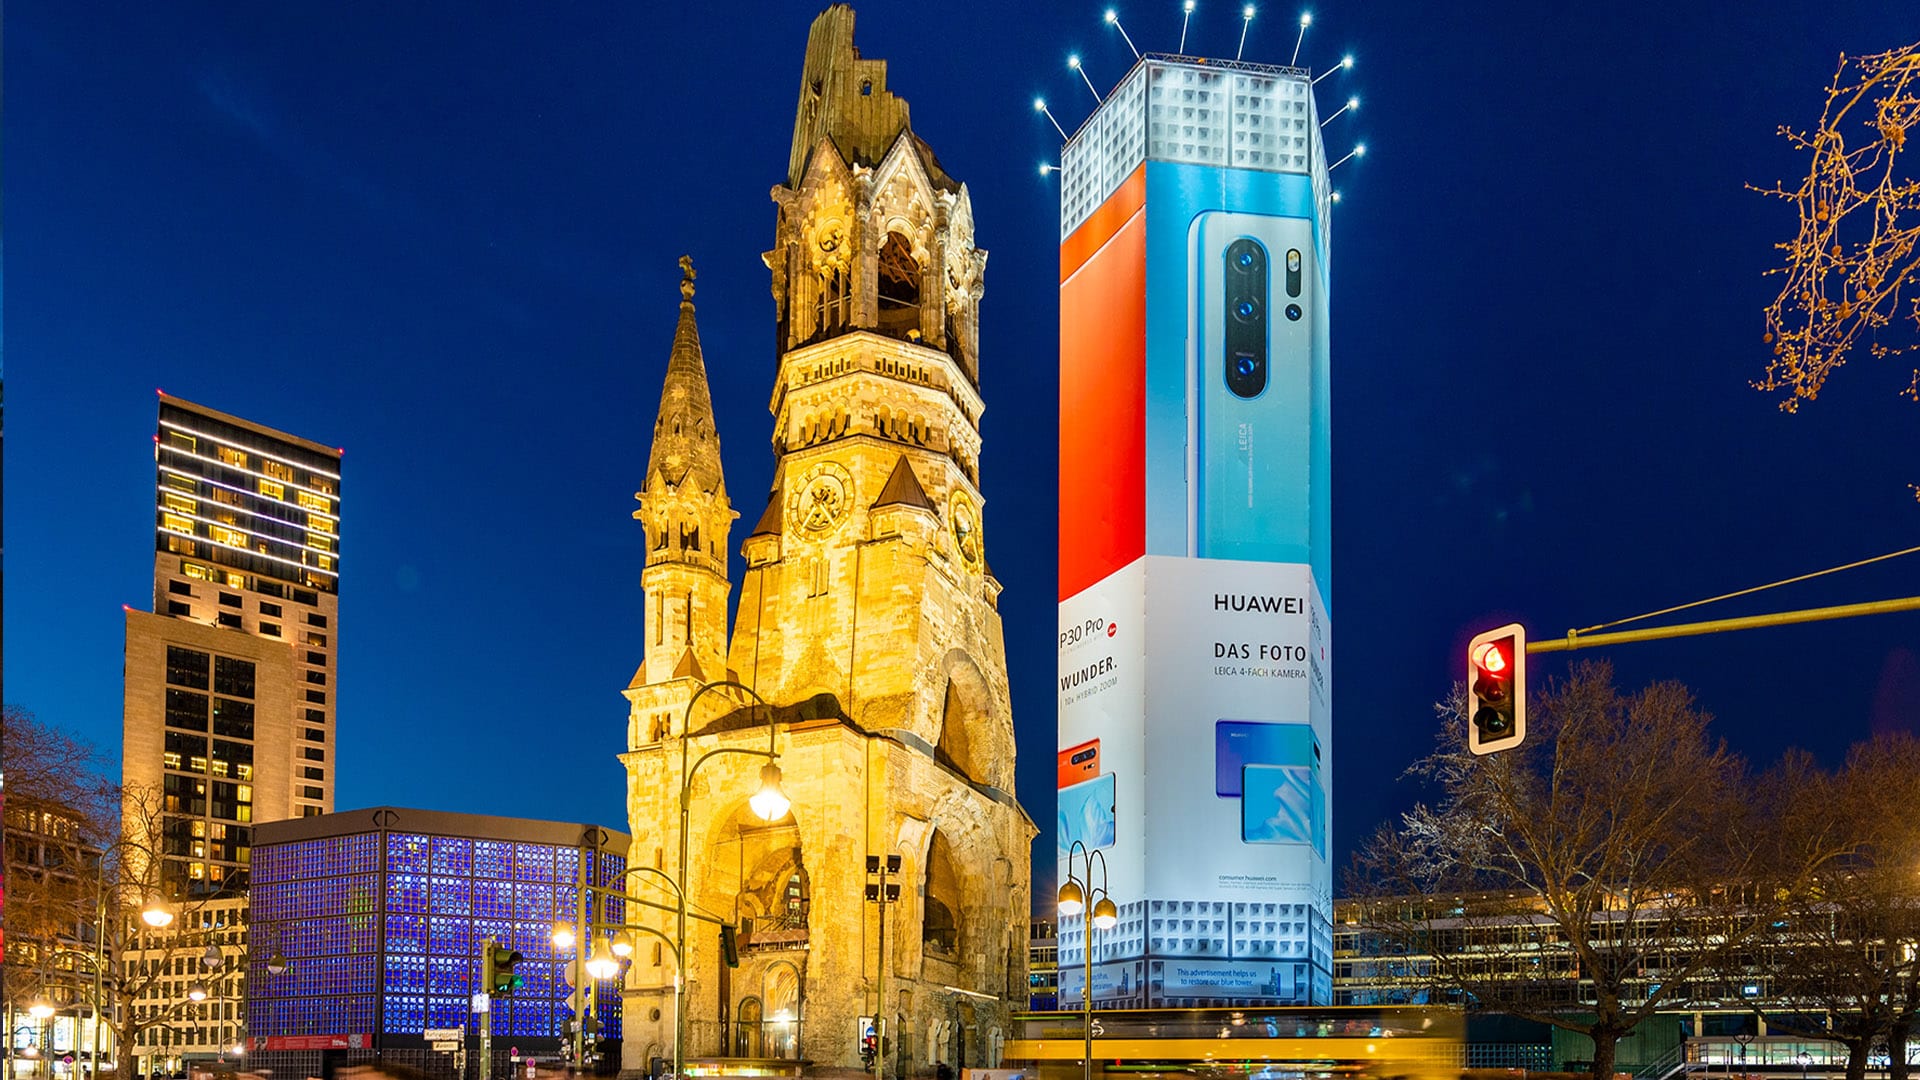 Riesenposter an der Gedächtniskirche in Berlin